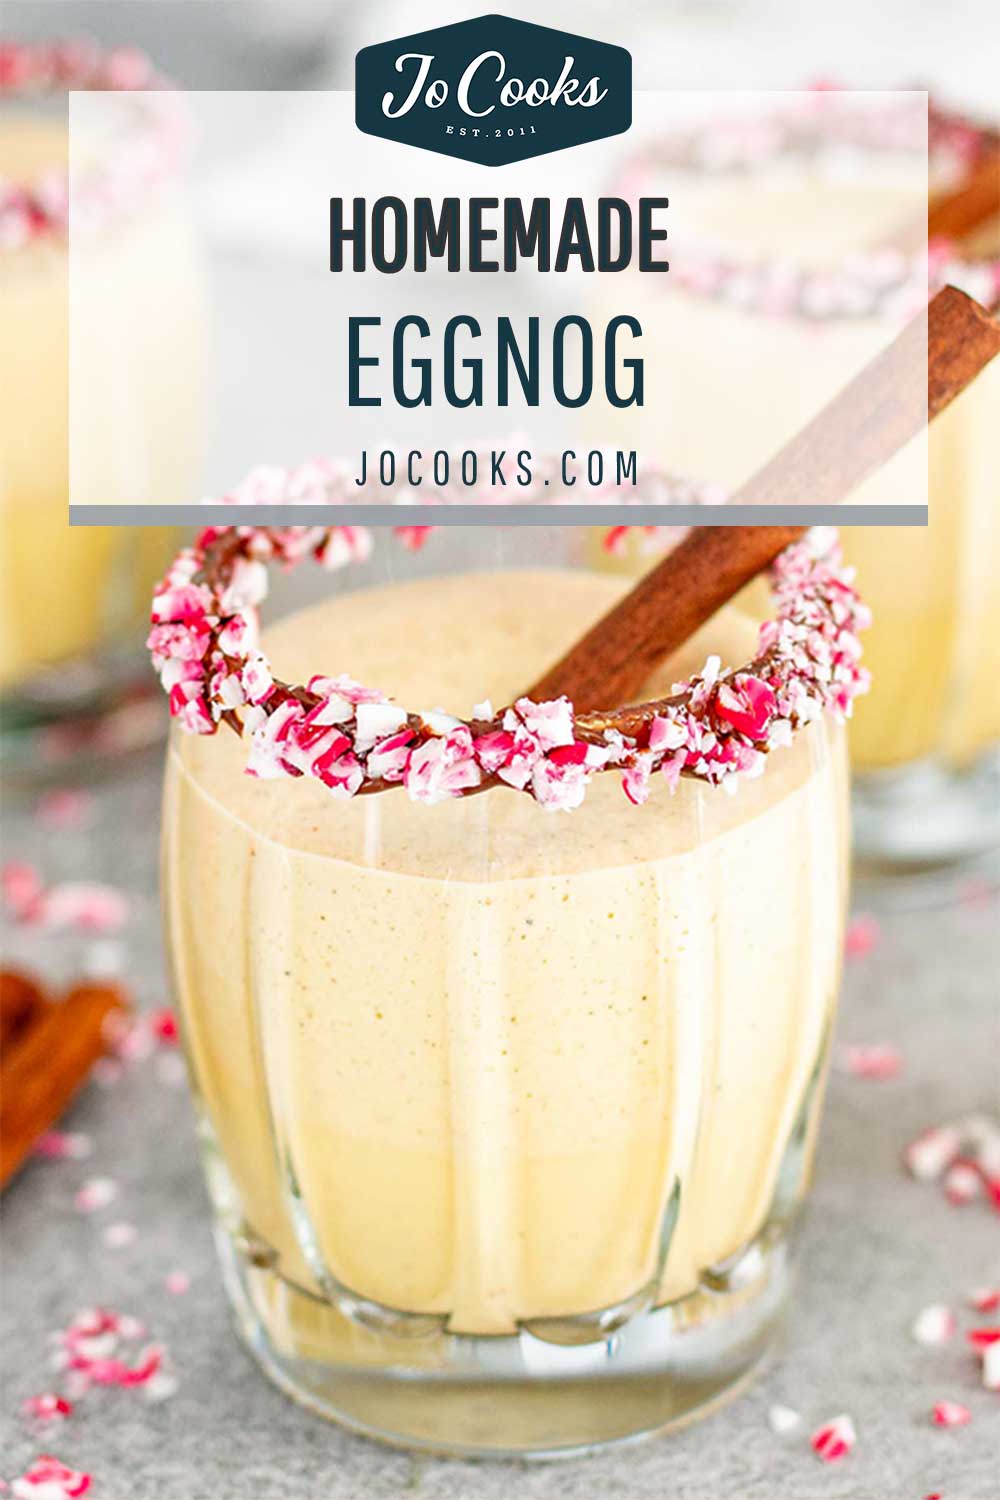 Homemade Eggnog Recipe